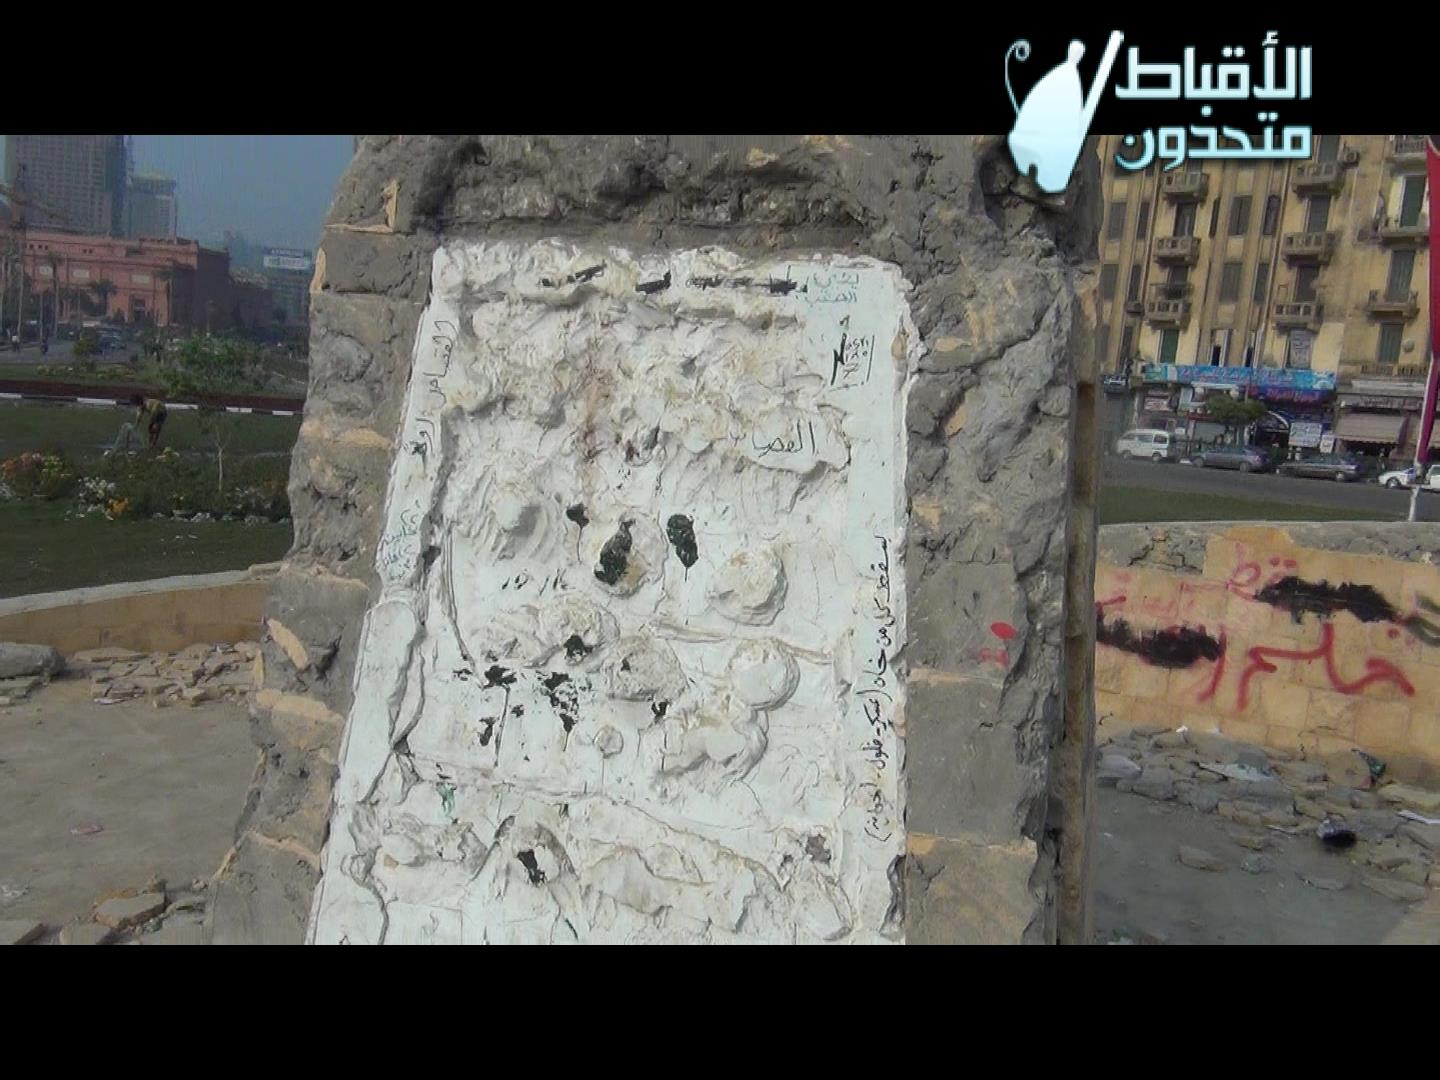 شاهد بالفيديو .. تدمير وتشويه النصب التذكاري لشهداء الثورة بميدان التحرير